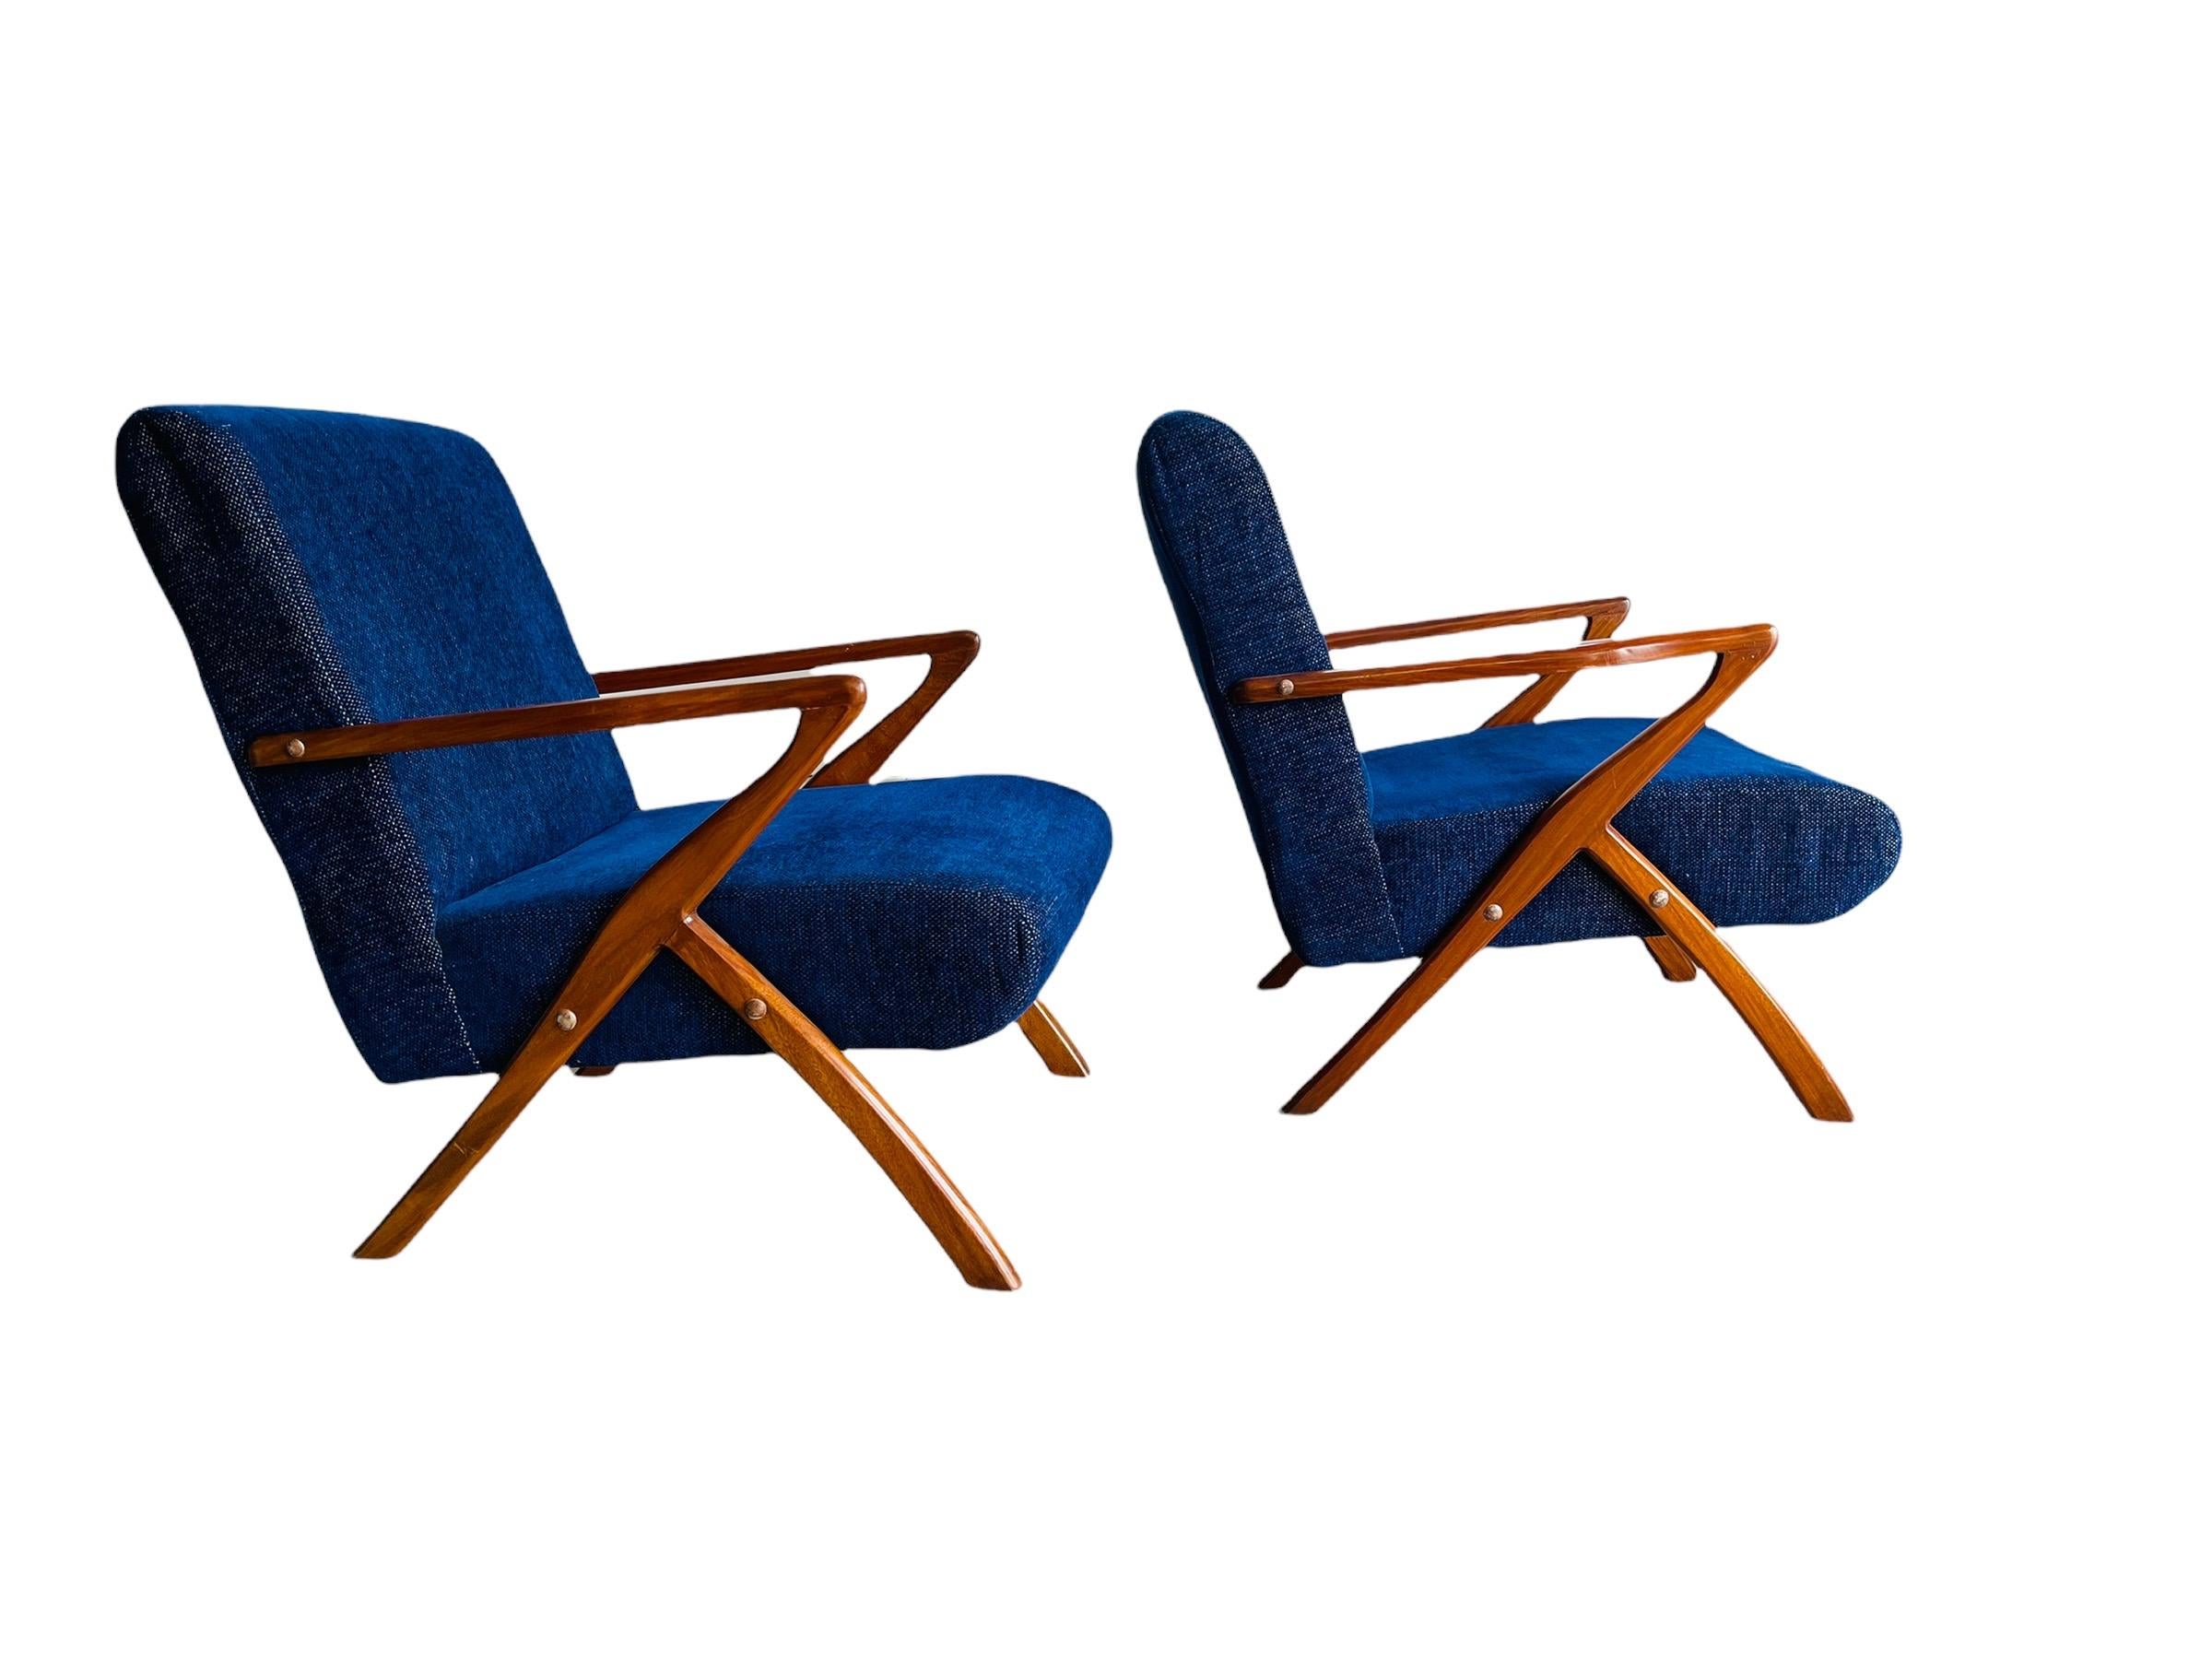 Hier ist ein atemberaubendes Paar Mid-Century Modern Selig Style Z Stuhl mit Walnussrahmen. Die Stühle haben ein schönes Walnussgestell mit dunkelblauem/mitternachtsblauem Stoff. Die Stühle sind sehr stilvoll und bequem. Die Stühle sind in gutem